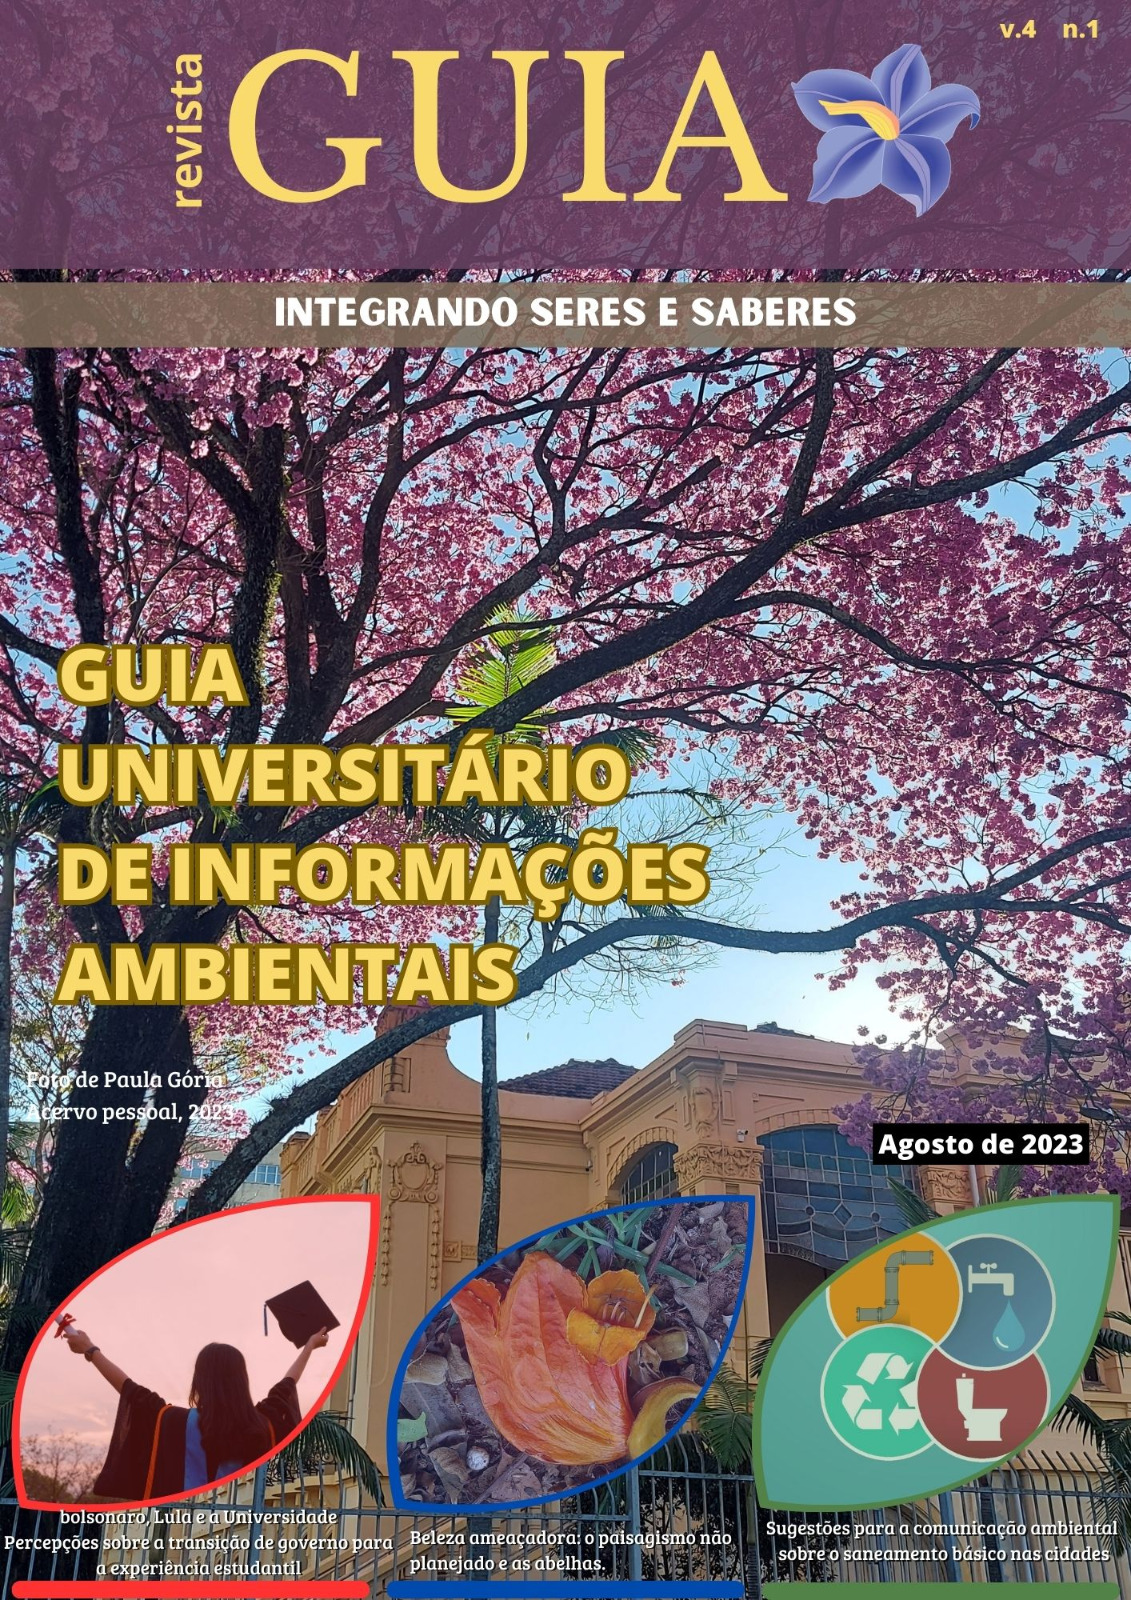 					Visualizar v. 4 n. 1 (2023): Revista GUIA - Integrando seres e saberes
				